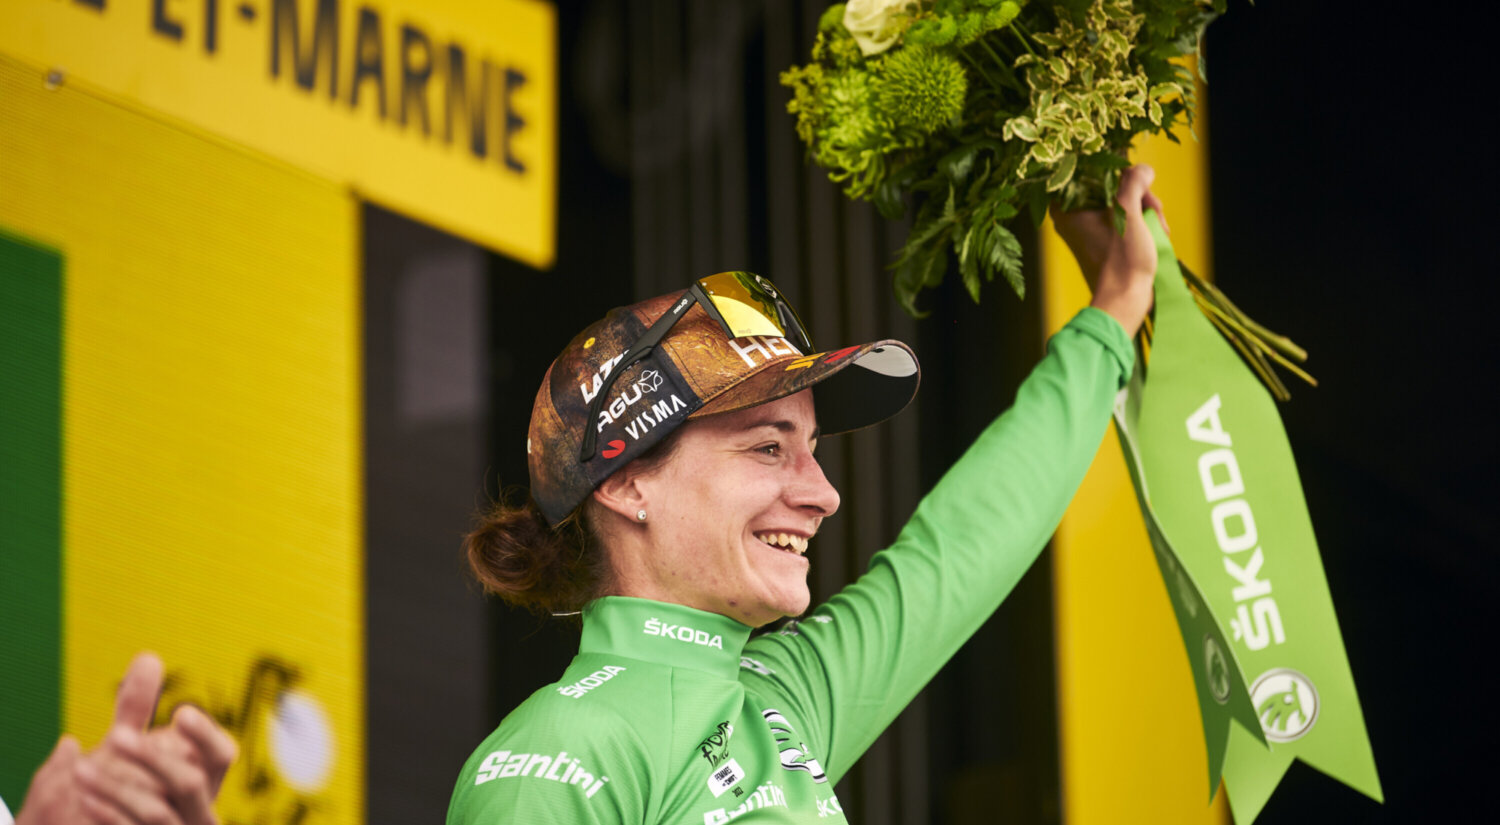 			© Vos wint de groene trui in de Tour de France Femmes 2022
	